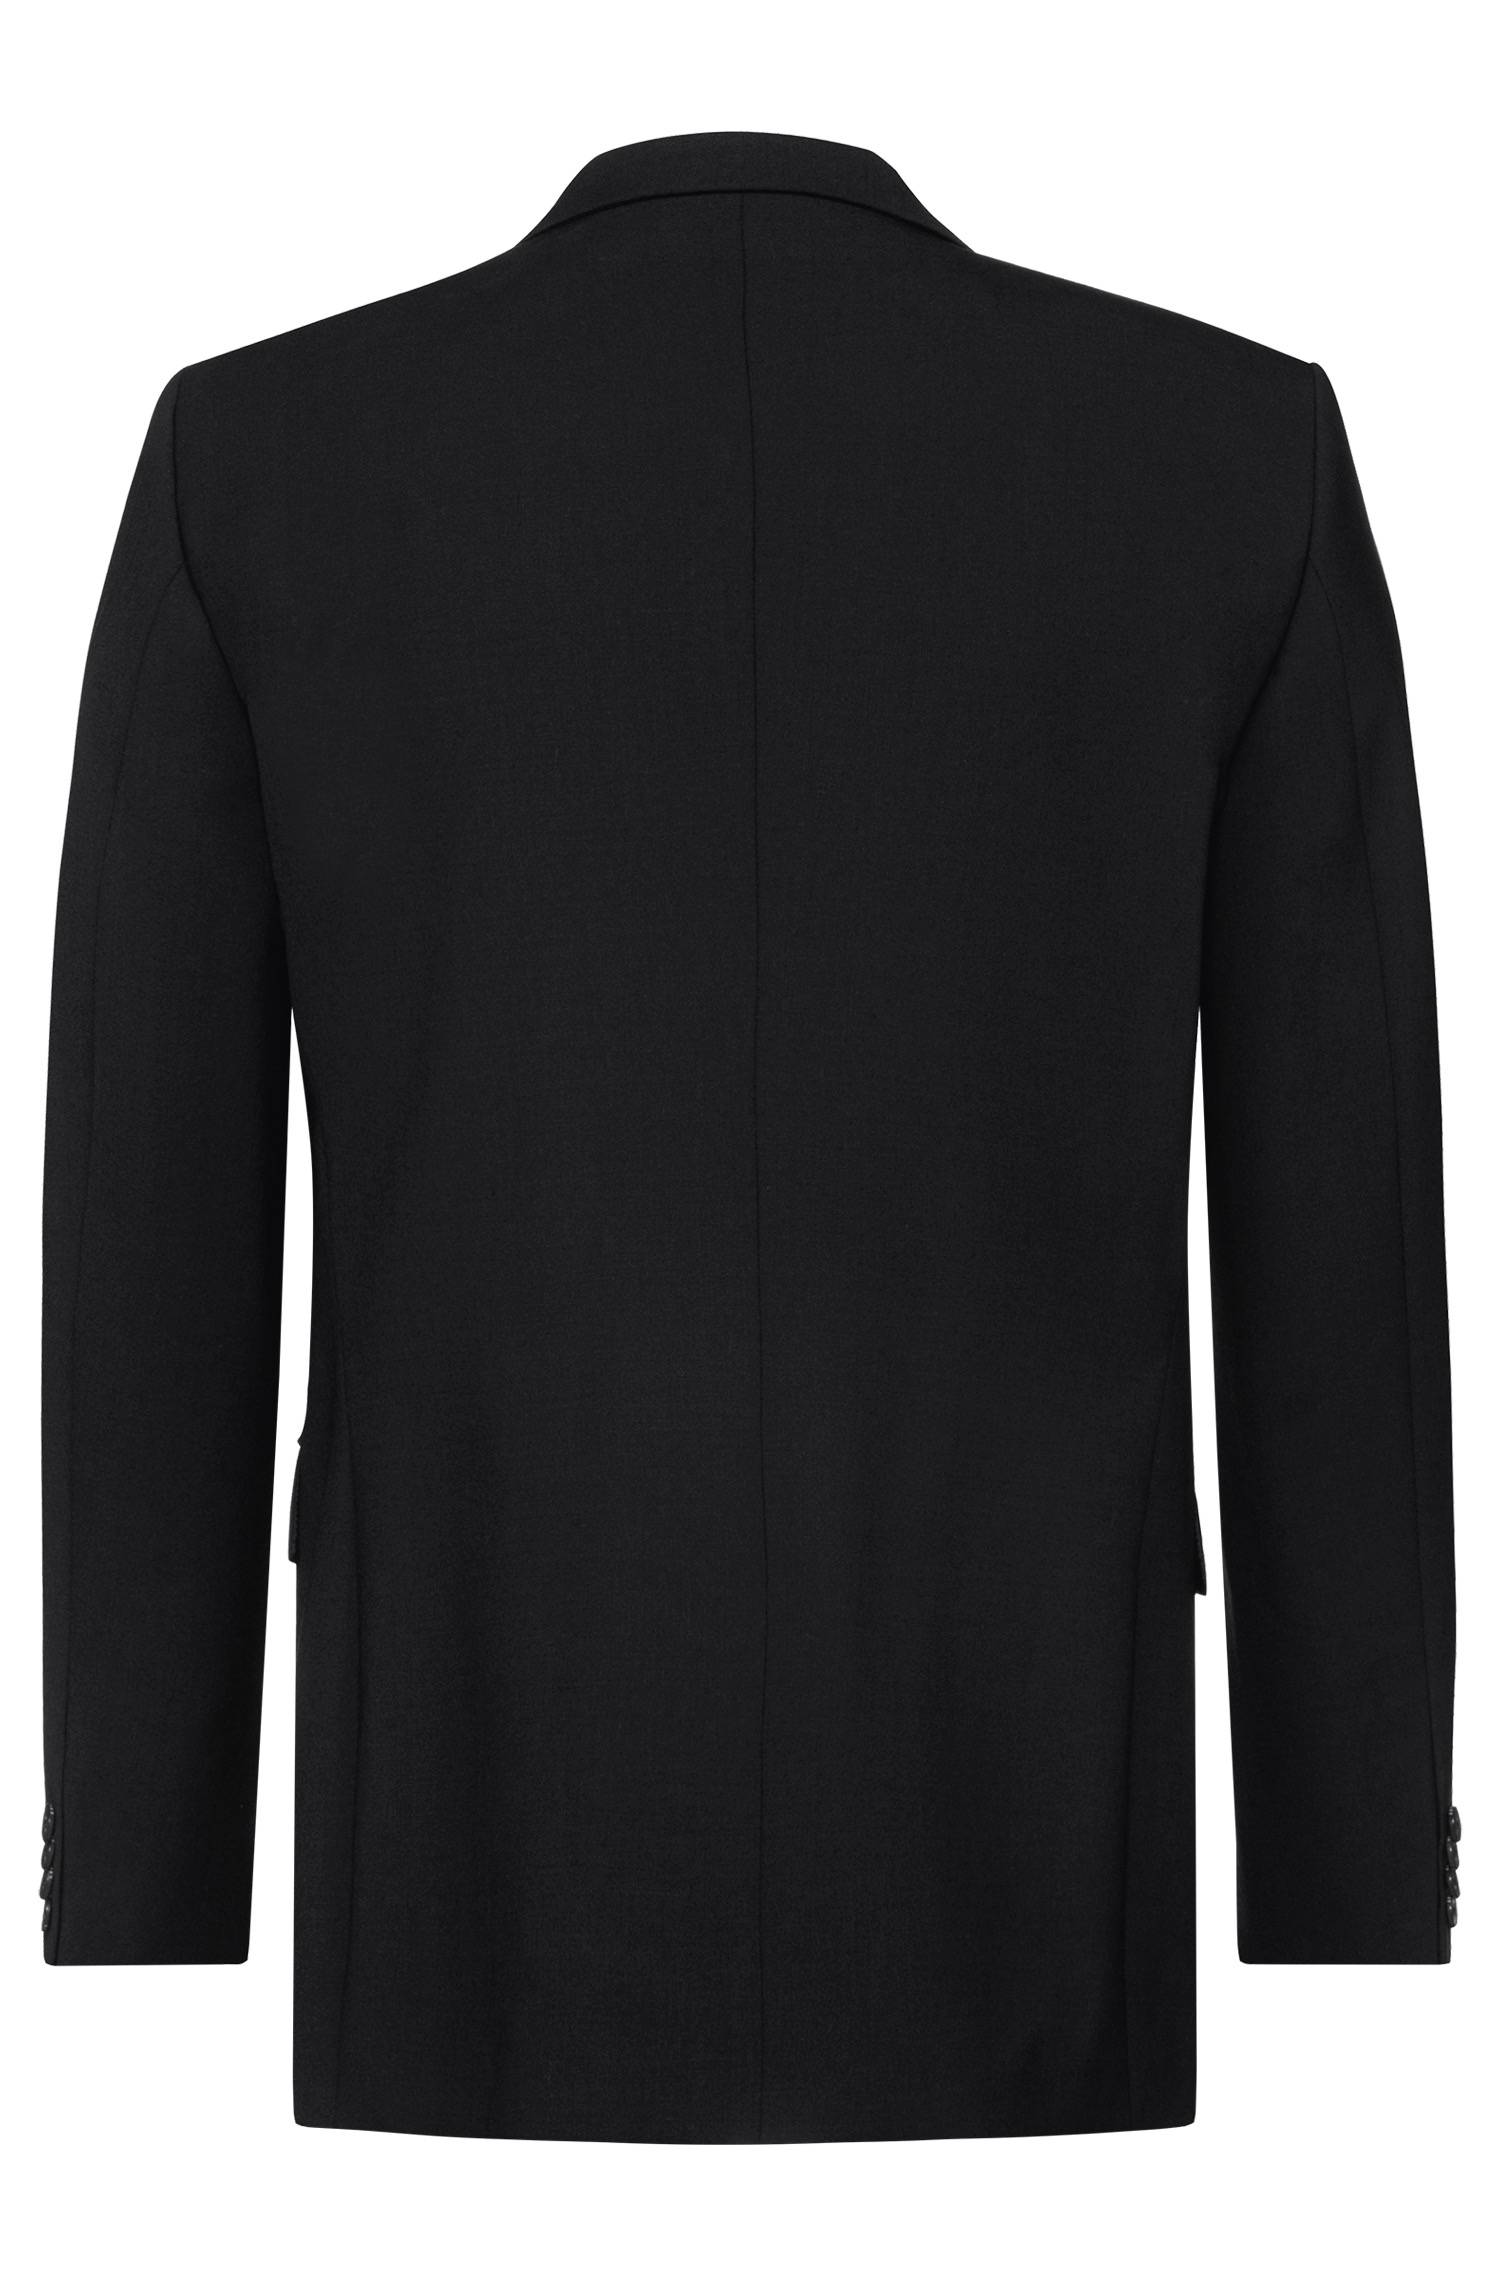 Men's jacket 2-button PREMIUM comfort fit